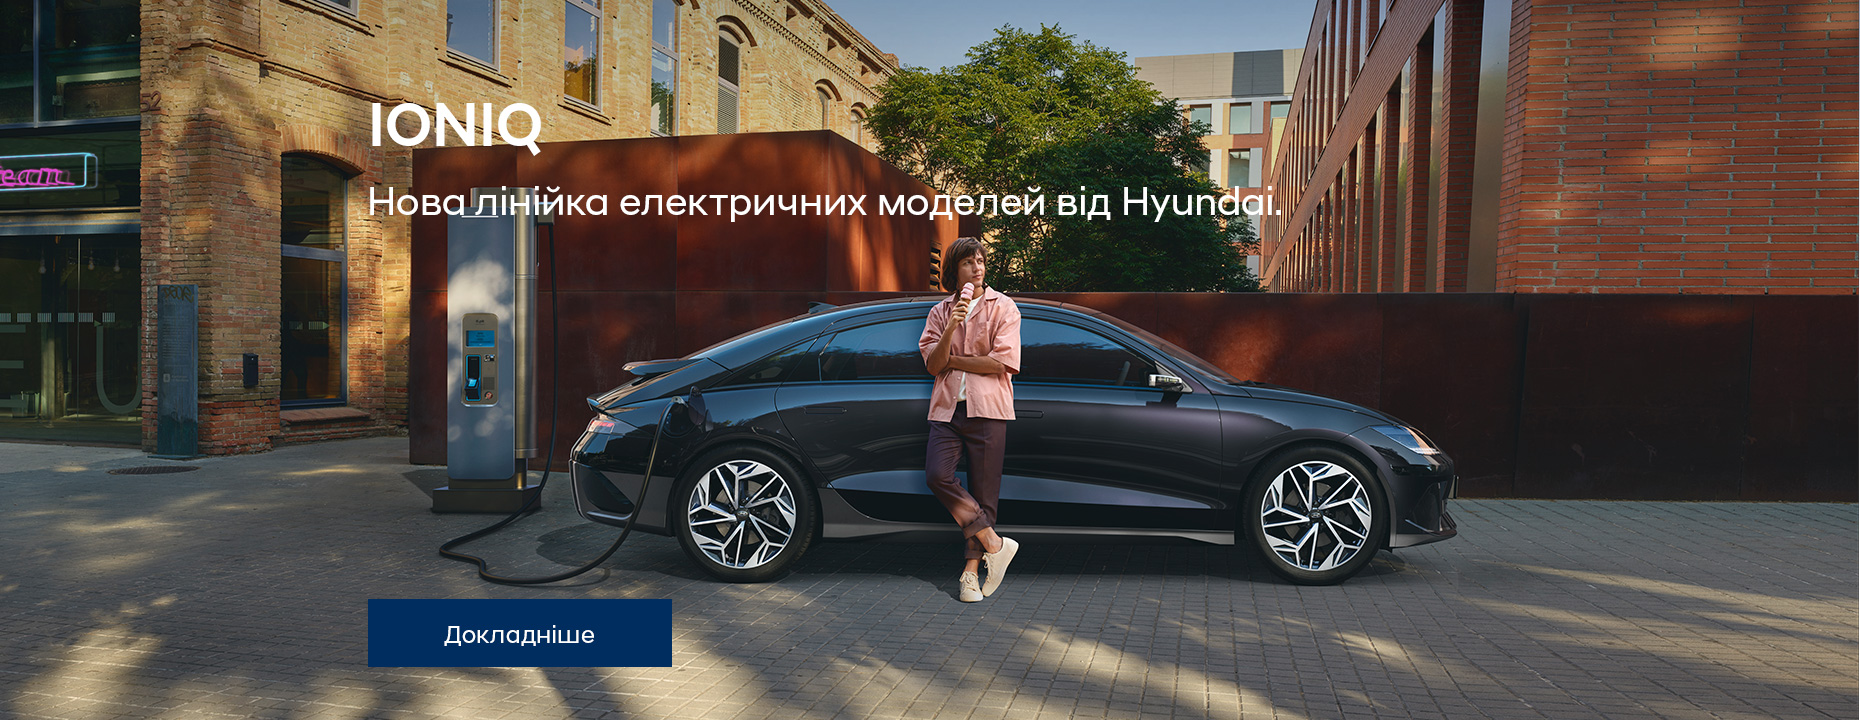 Автомобілі Hyundai м. Тернопіль | Купити новий Хюндай | Автопалац Тернопіль - фото 34